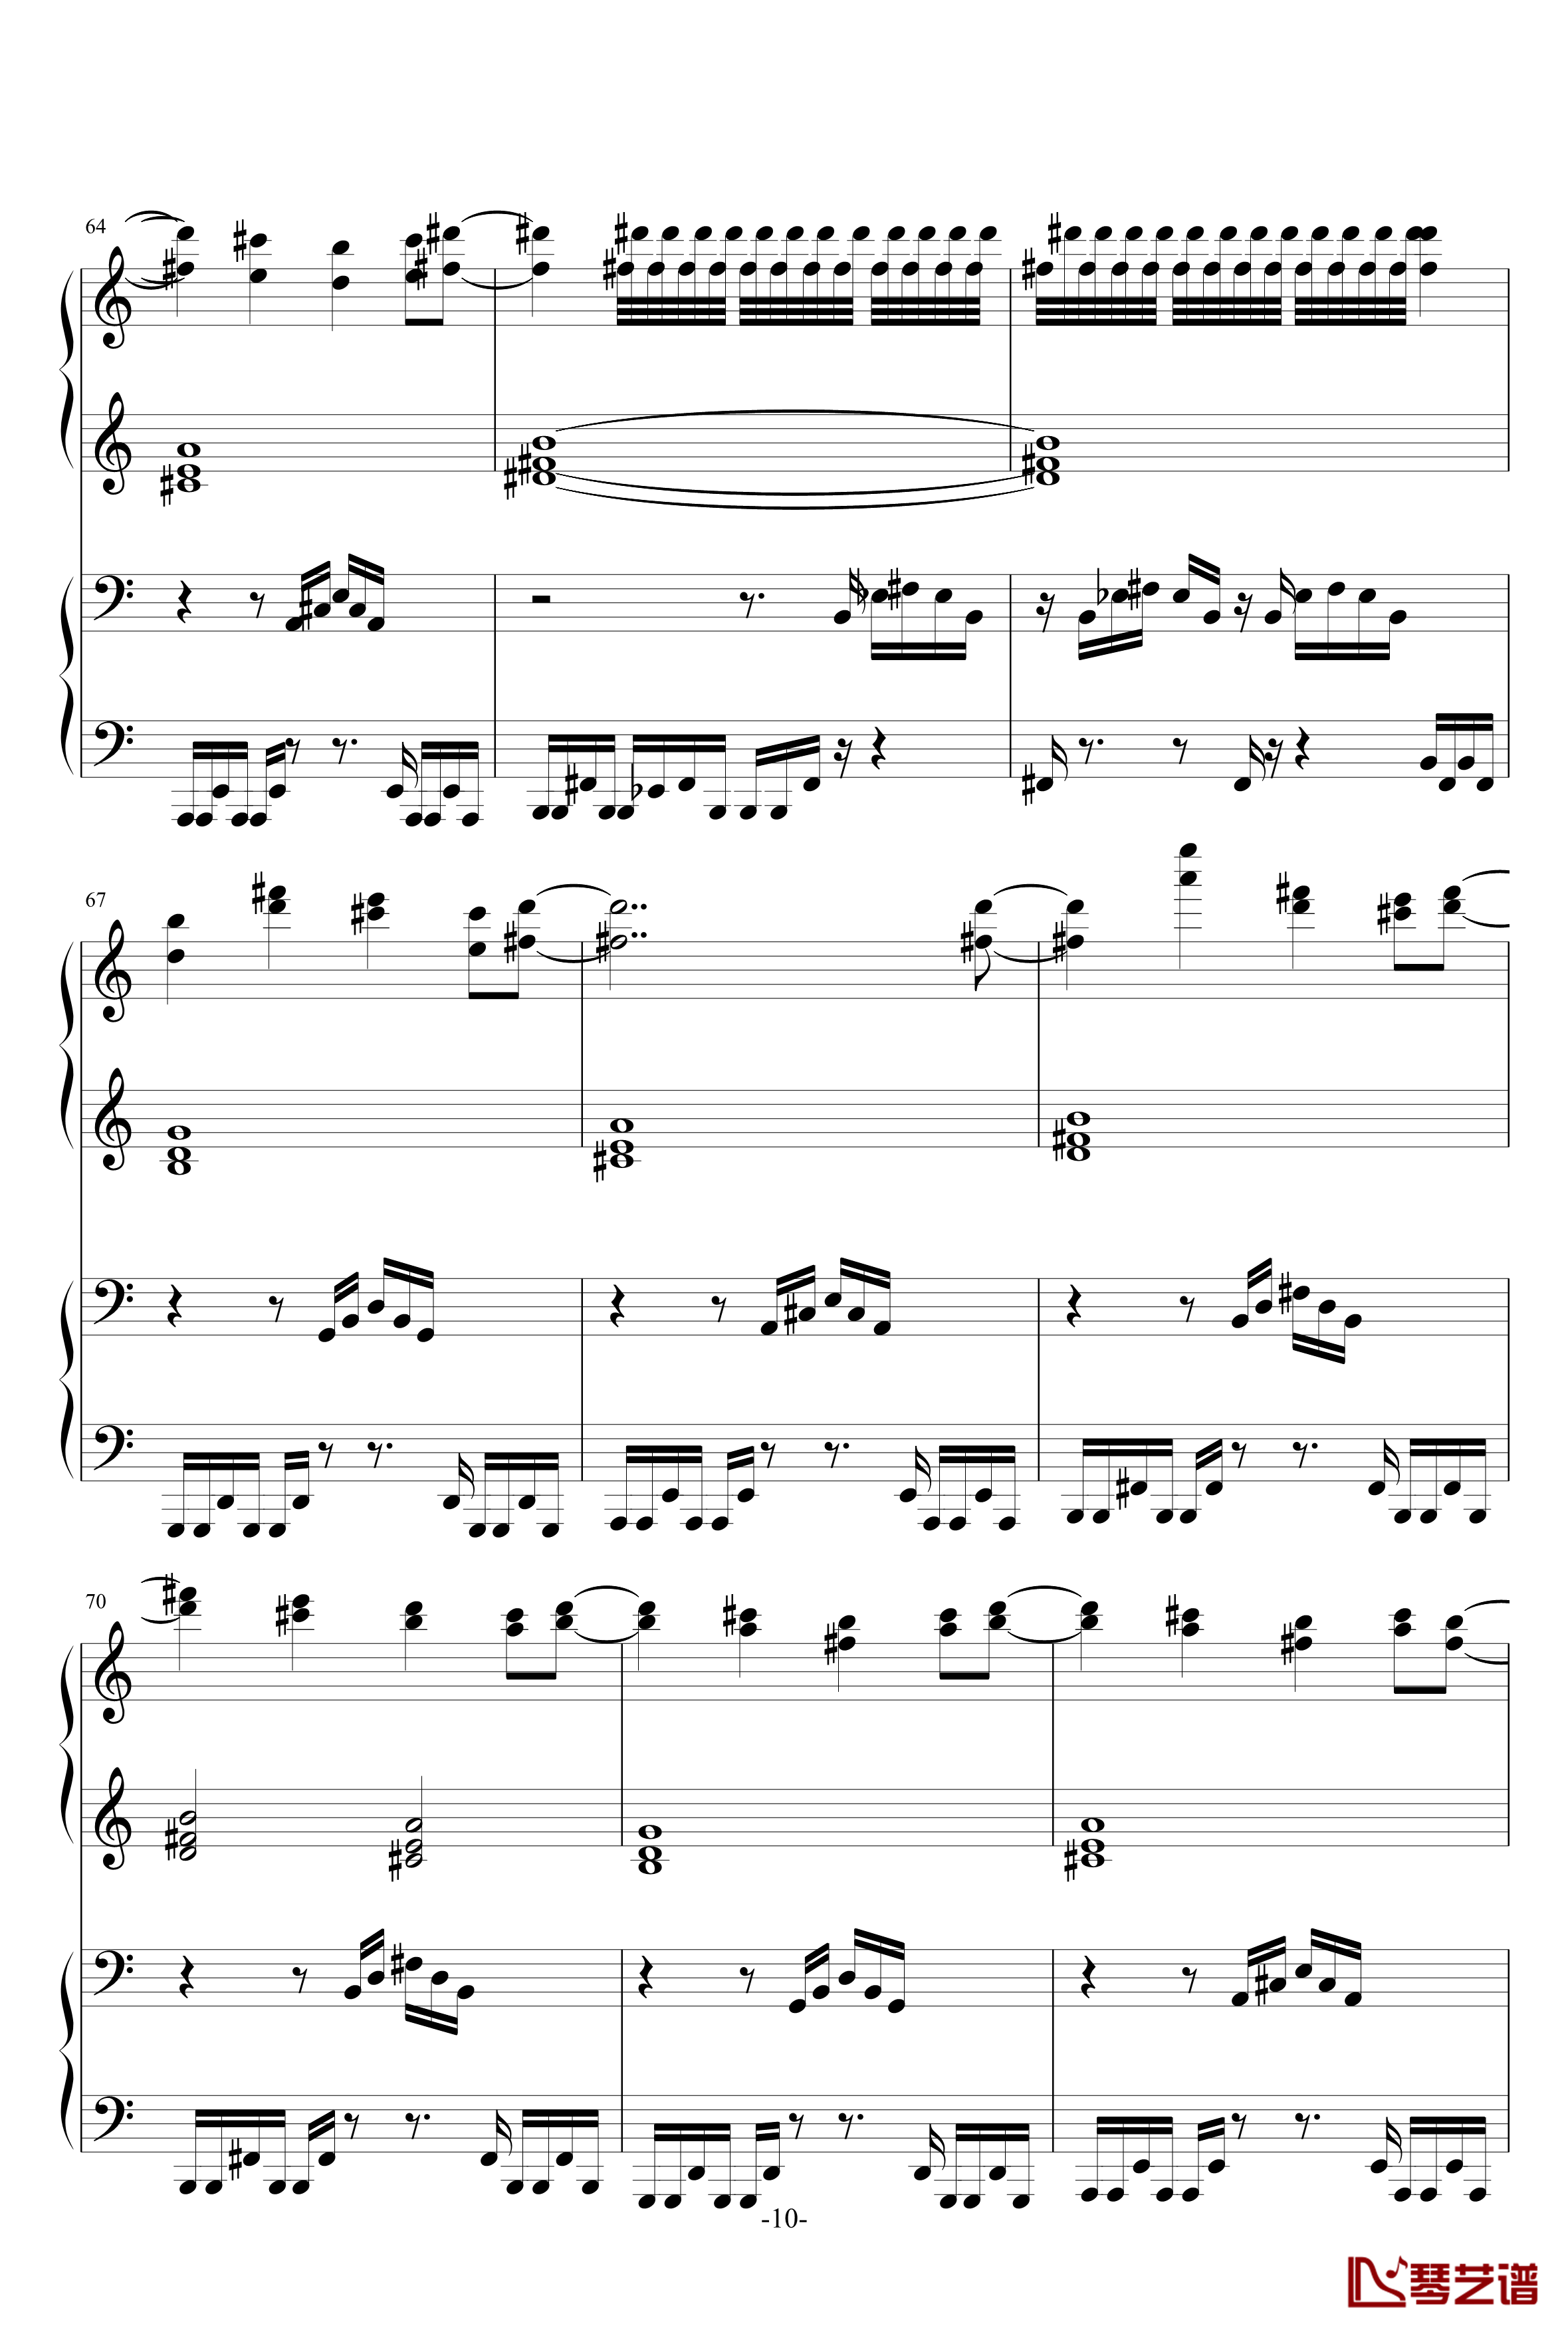 亡灵幻想曲原版人类可弹钢琴谱-鬼畜10